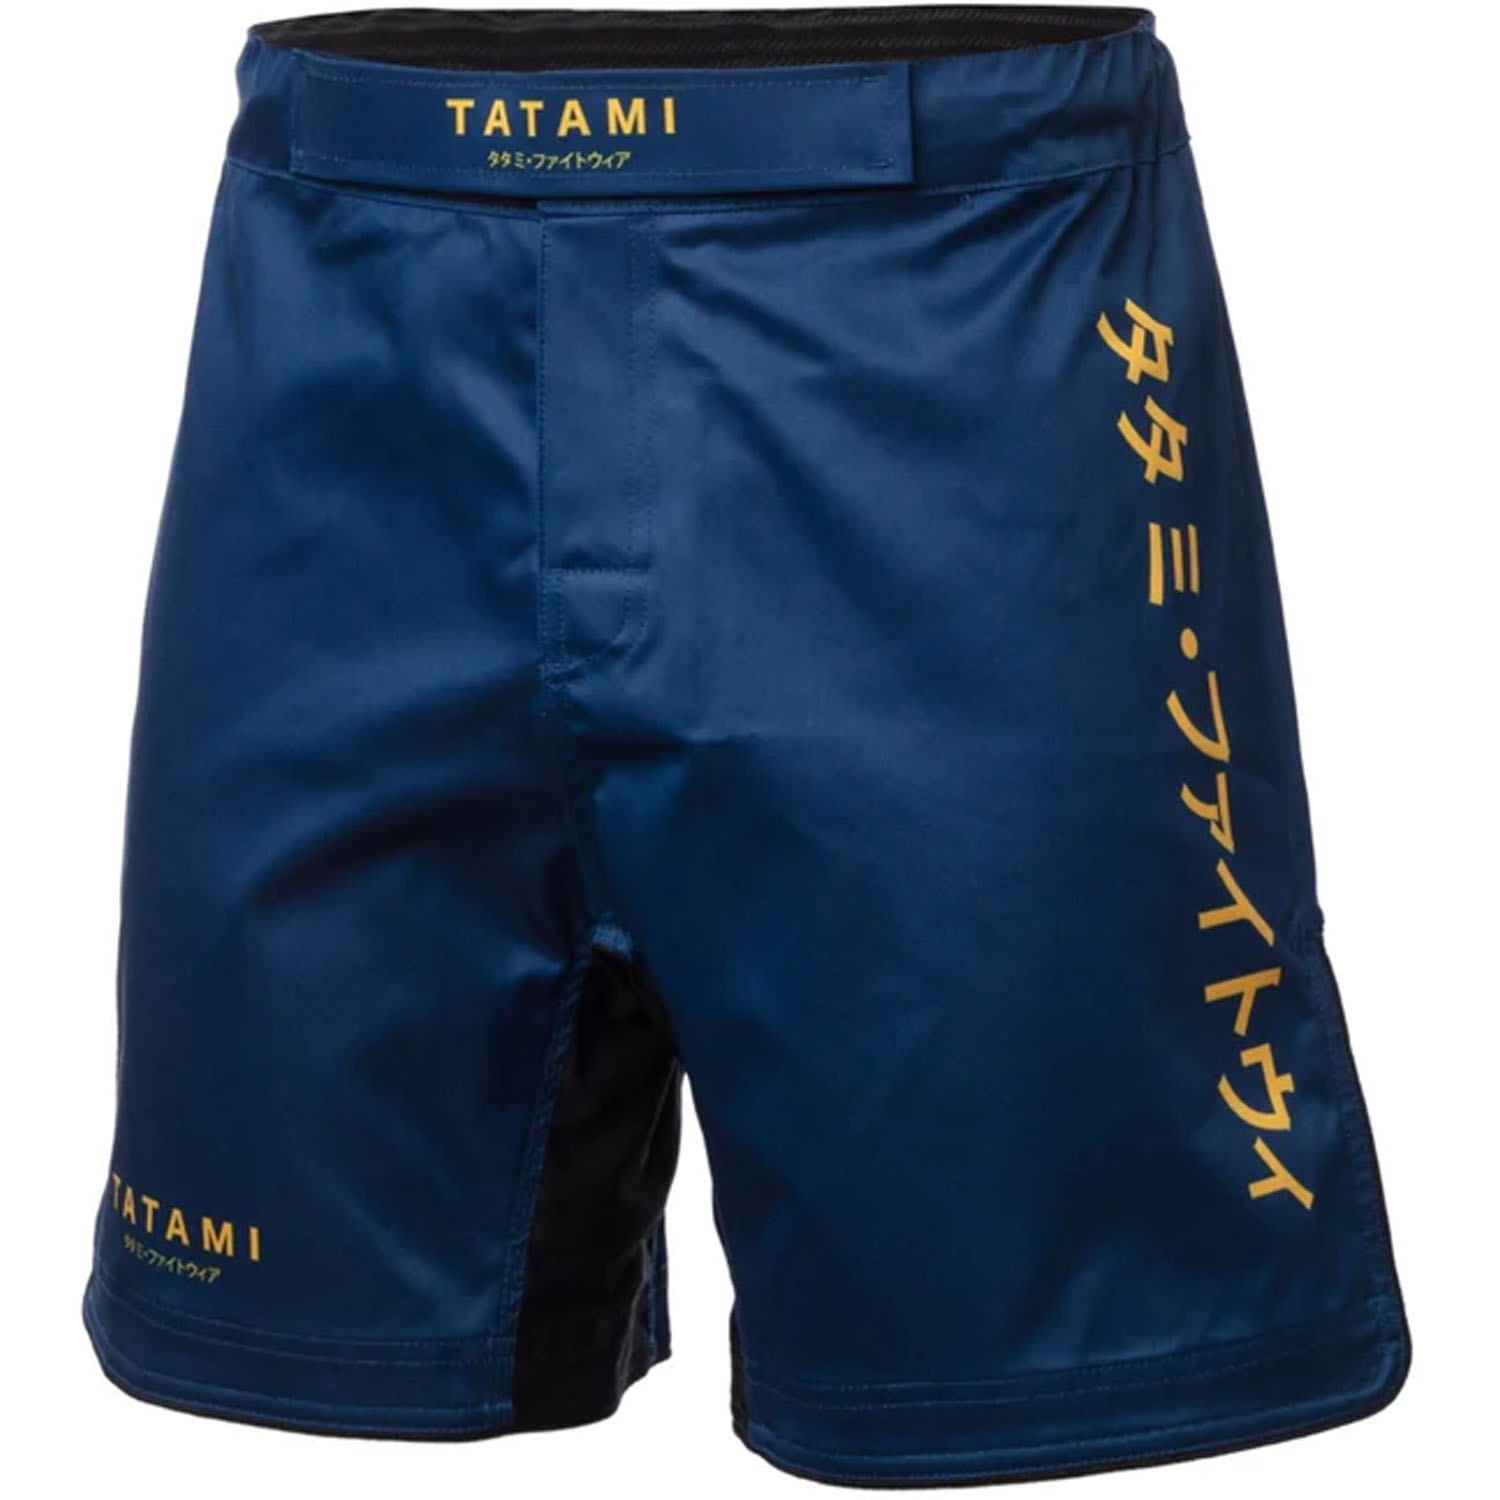 Tatami MMA Fight Shorts, Katakana, navy